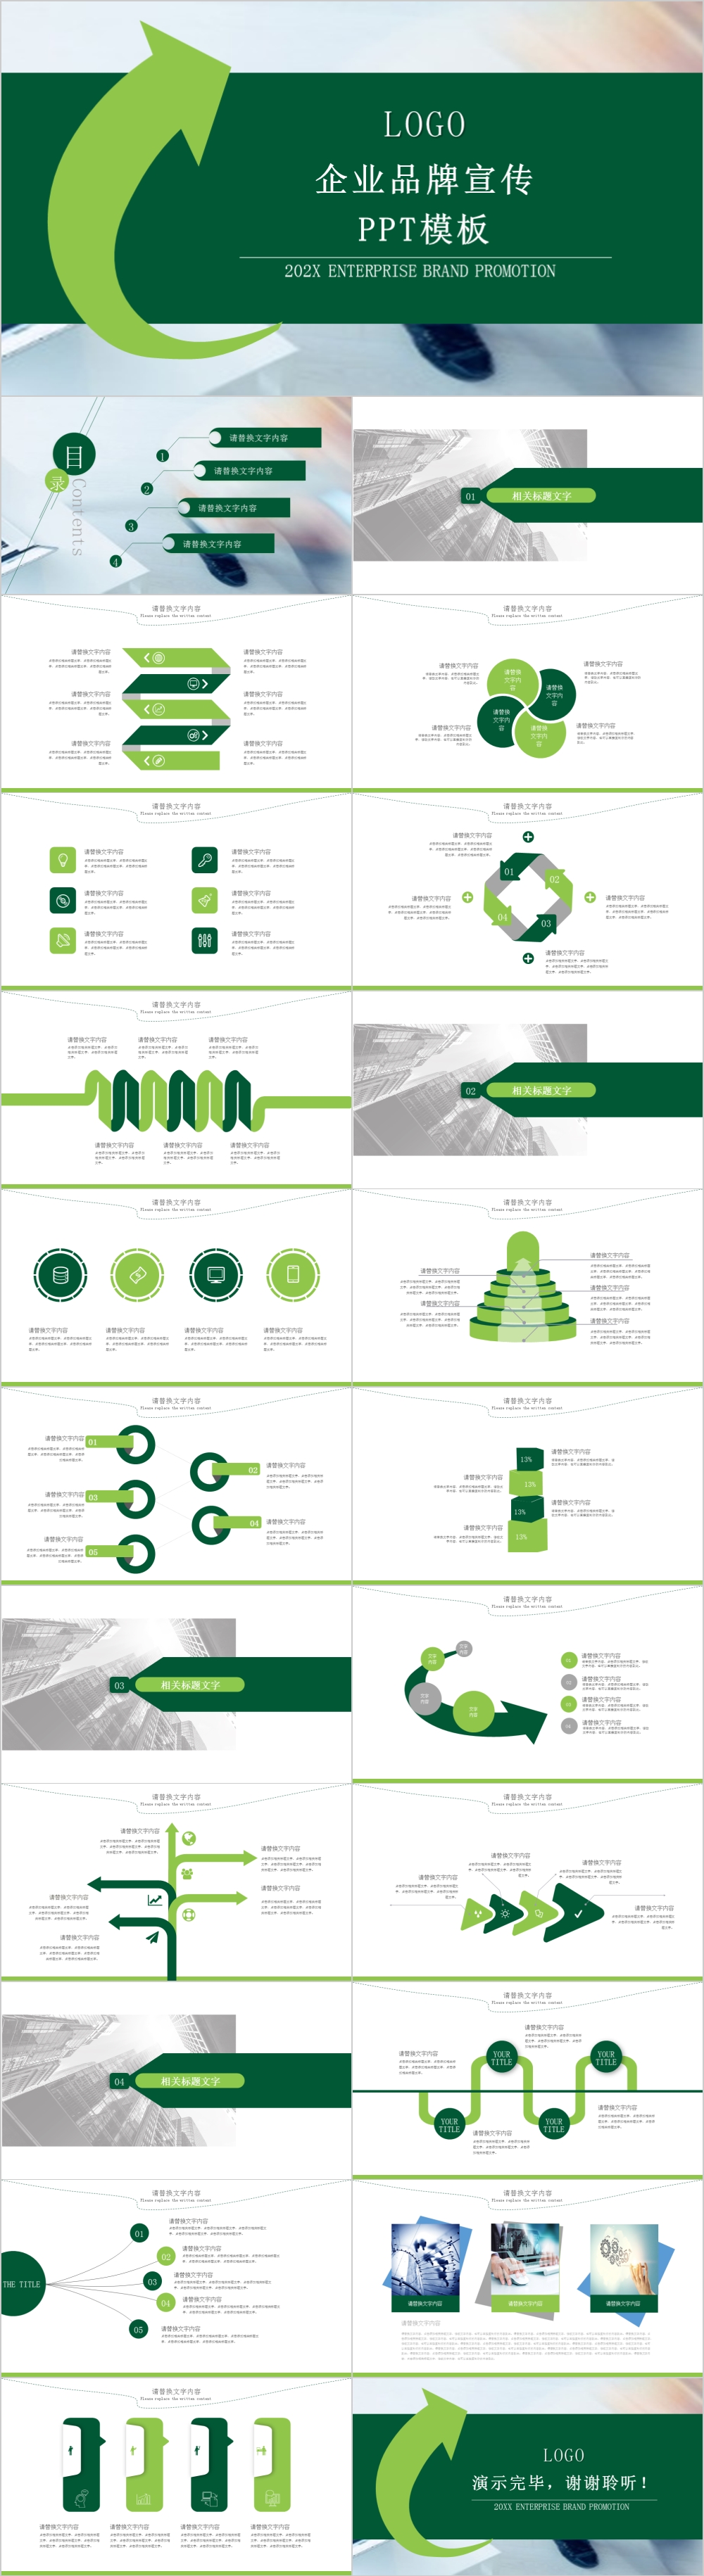 绿色简约风企业品牌宣传PPT模板